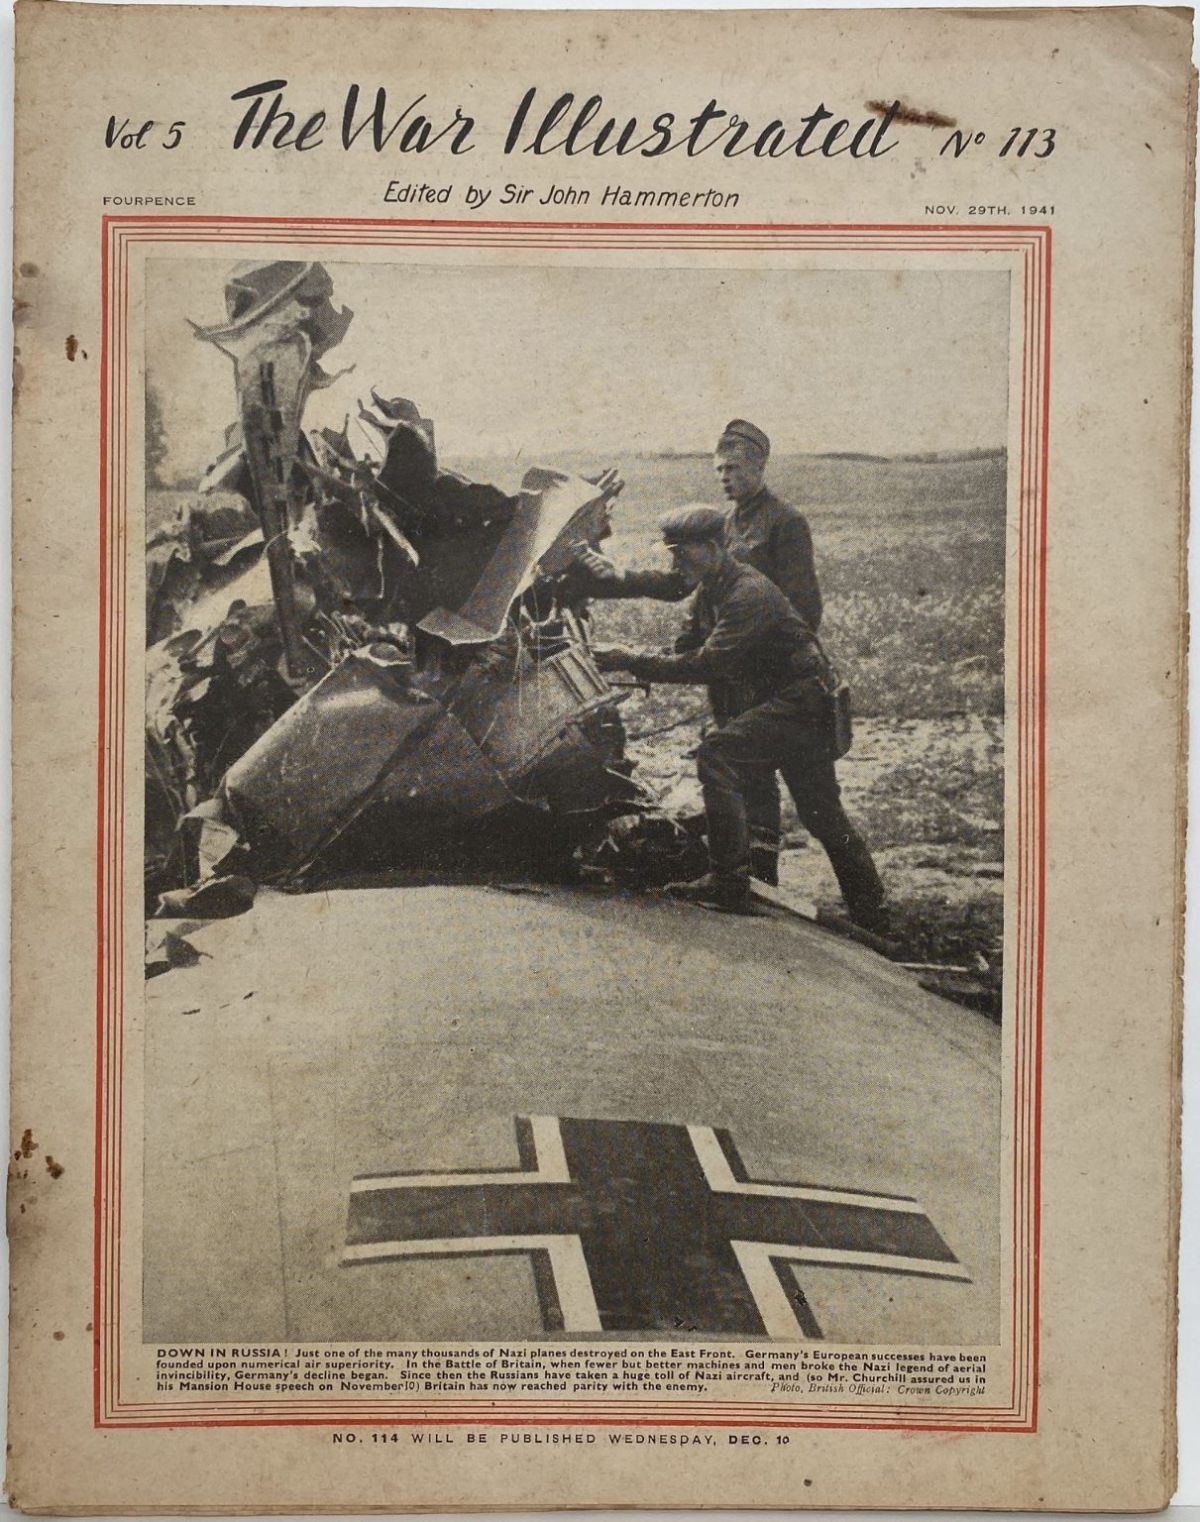 THE WAR ILLUSTRATED - Vol 5, No 113, 29th Nov 1941